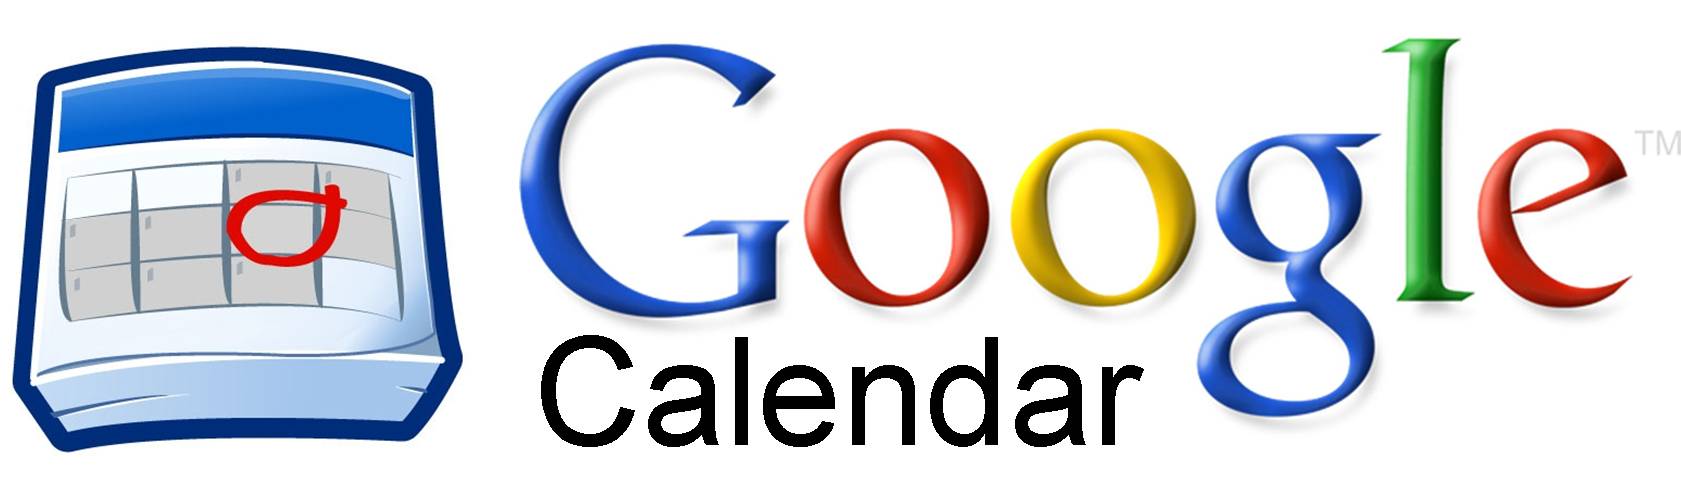 Google Calendar Productividad